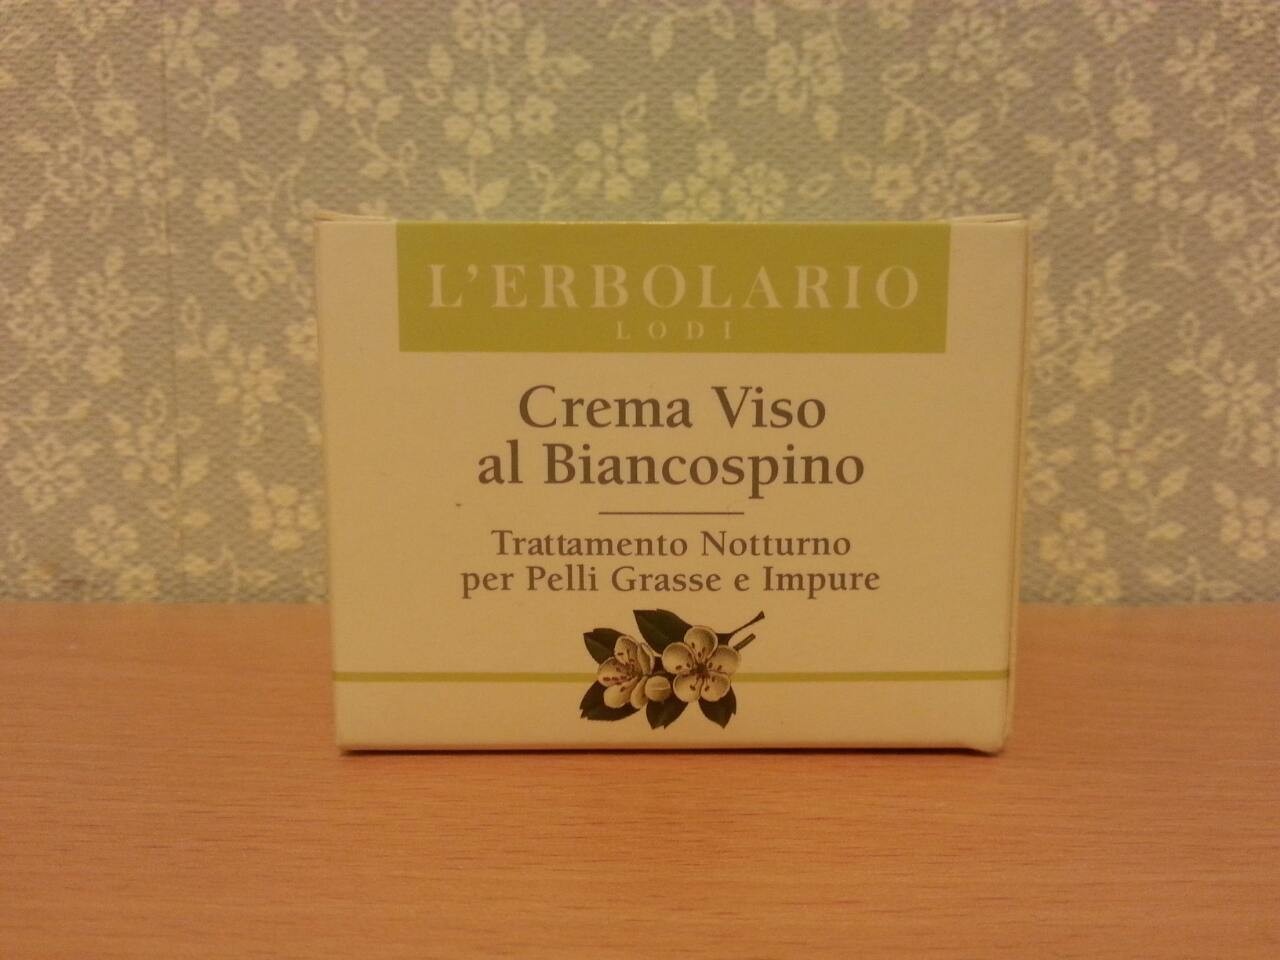 L`erbolario Crema Viso al Biancospino Новый крем для лица с боярышником